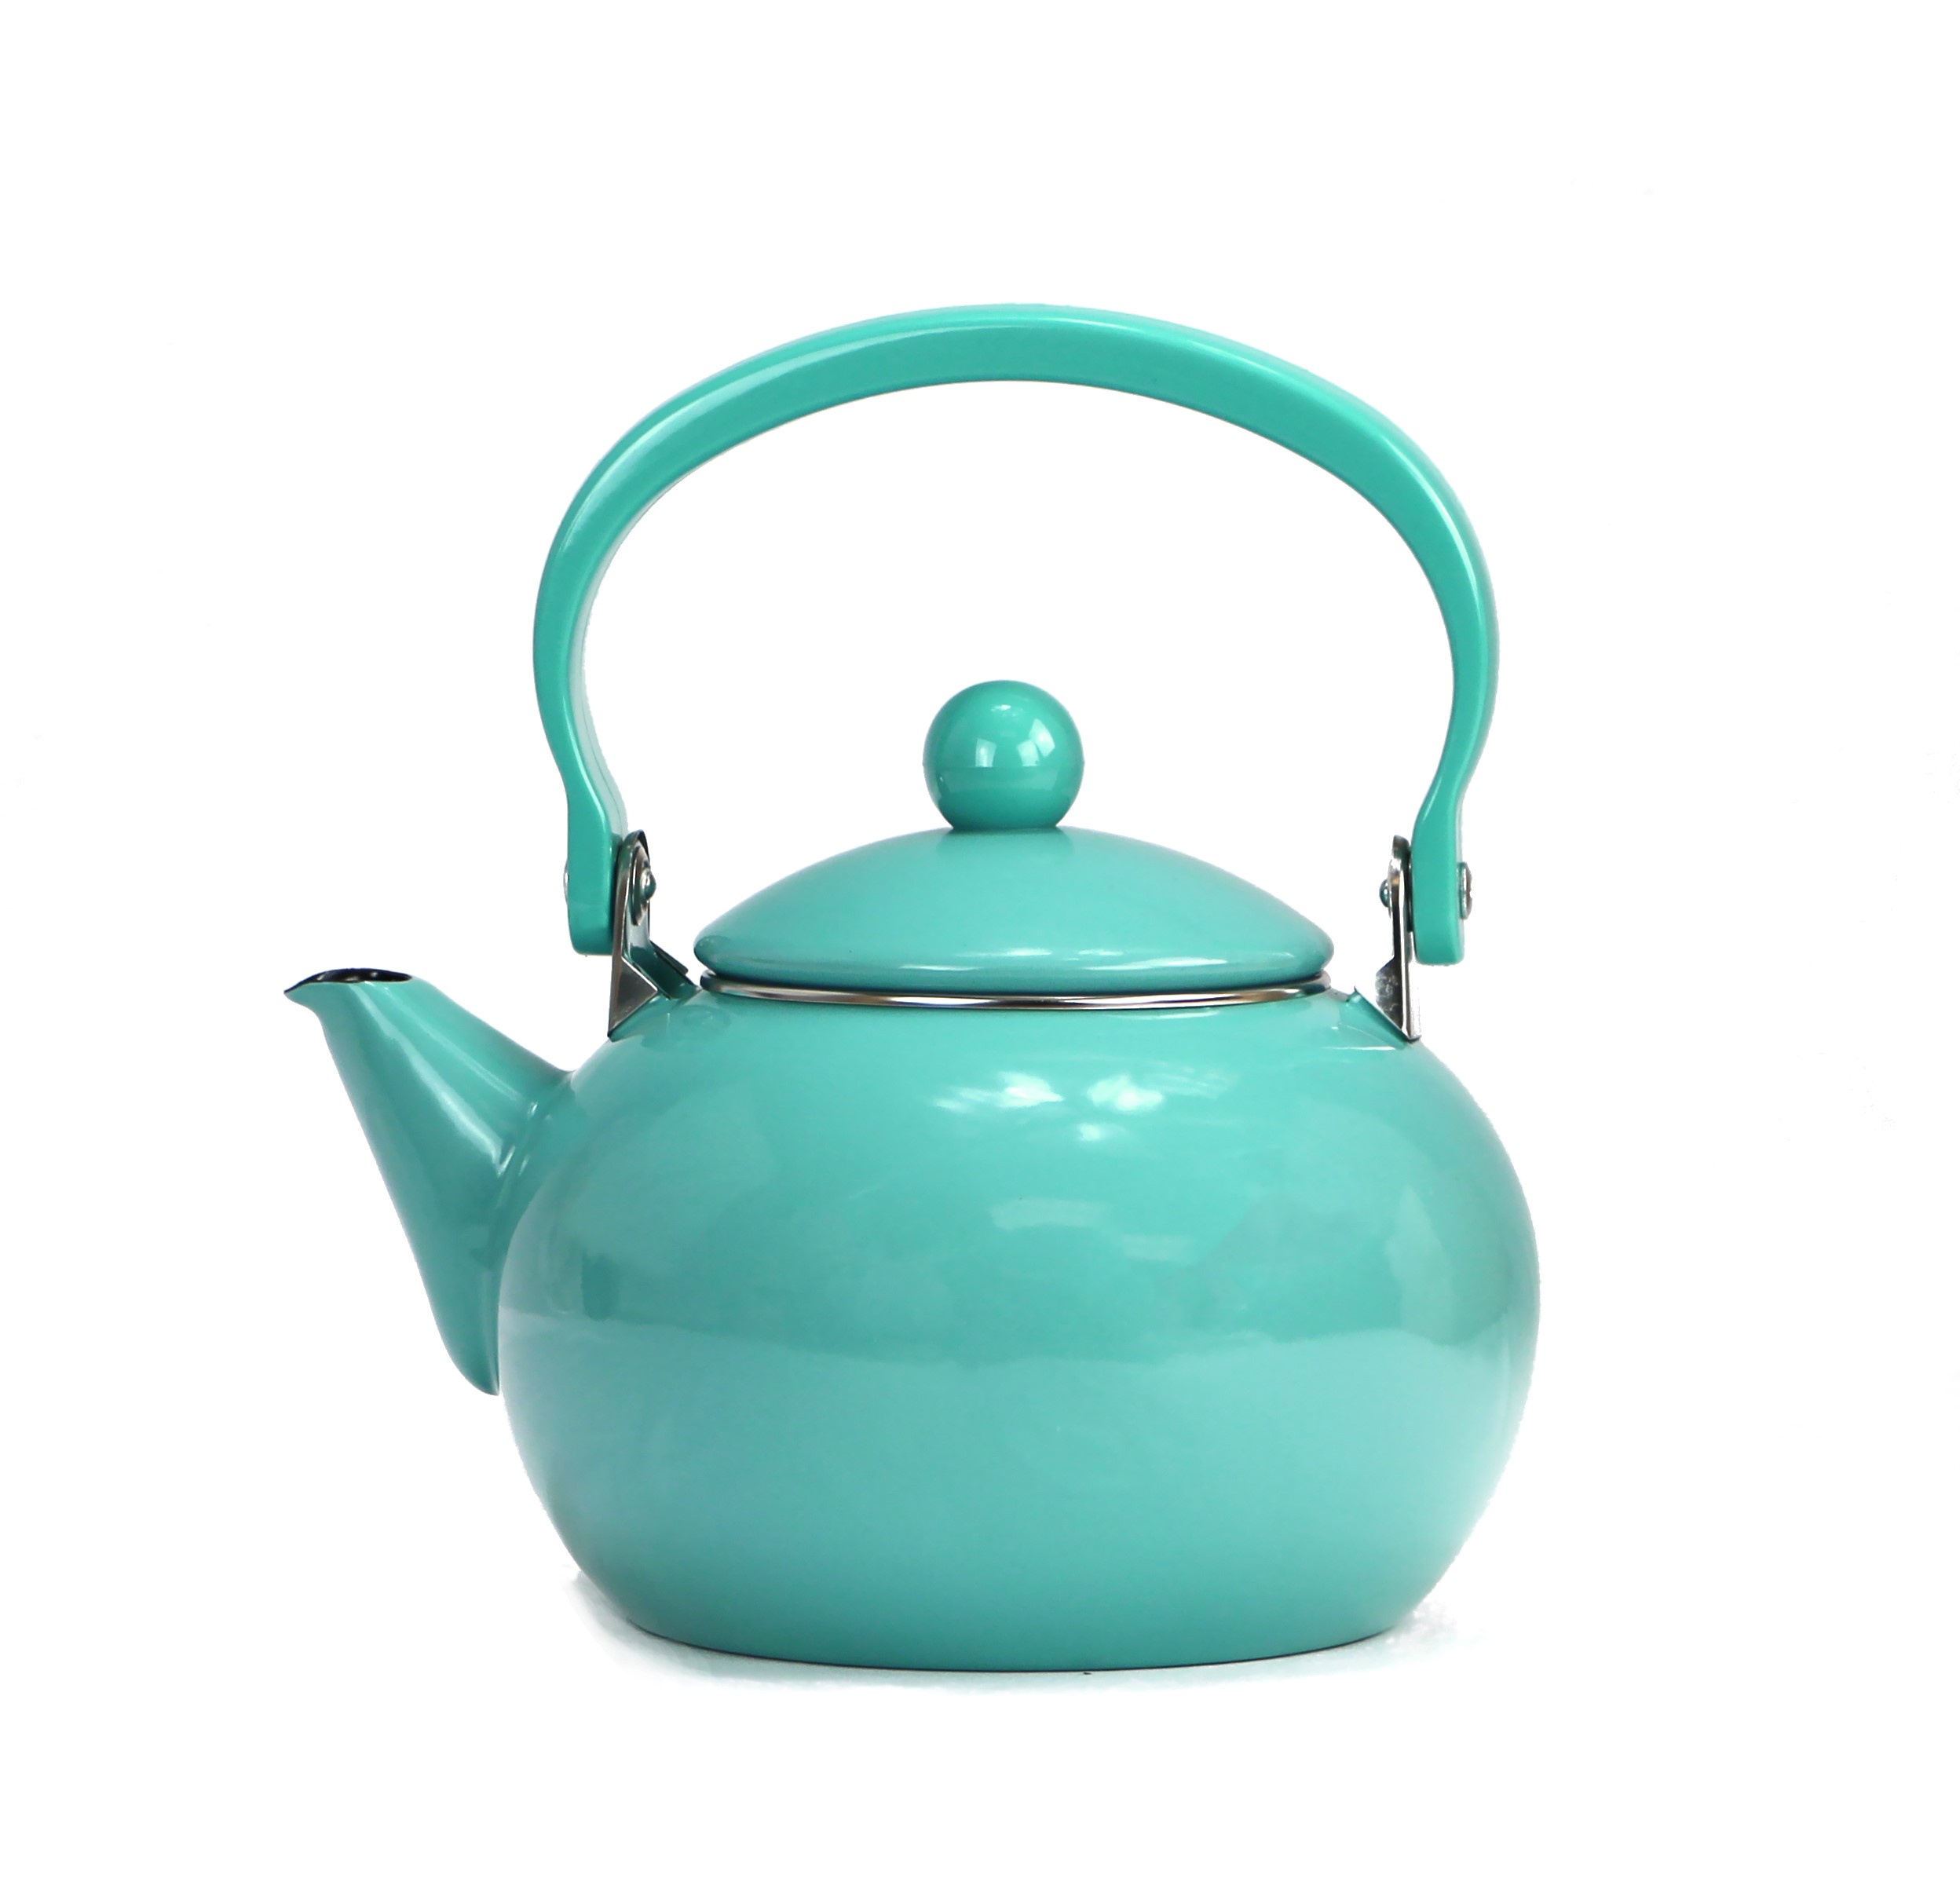 30702 Turquoise - Harvest Tea Kettle